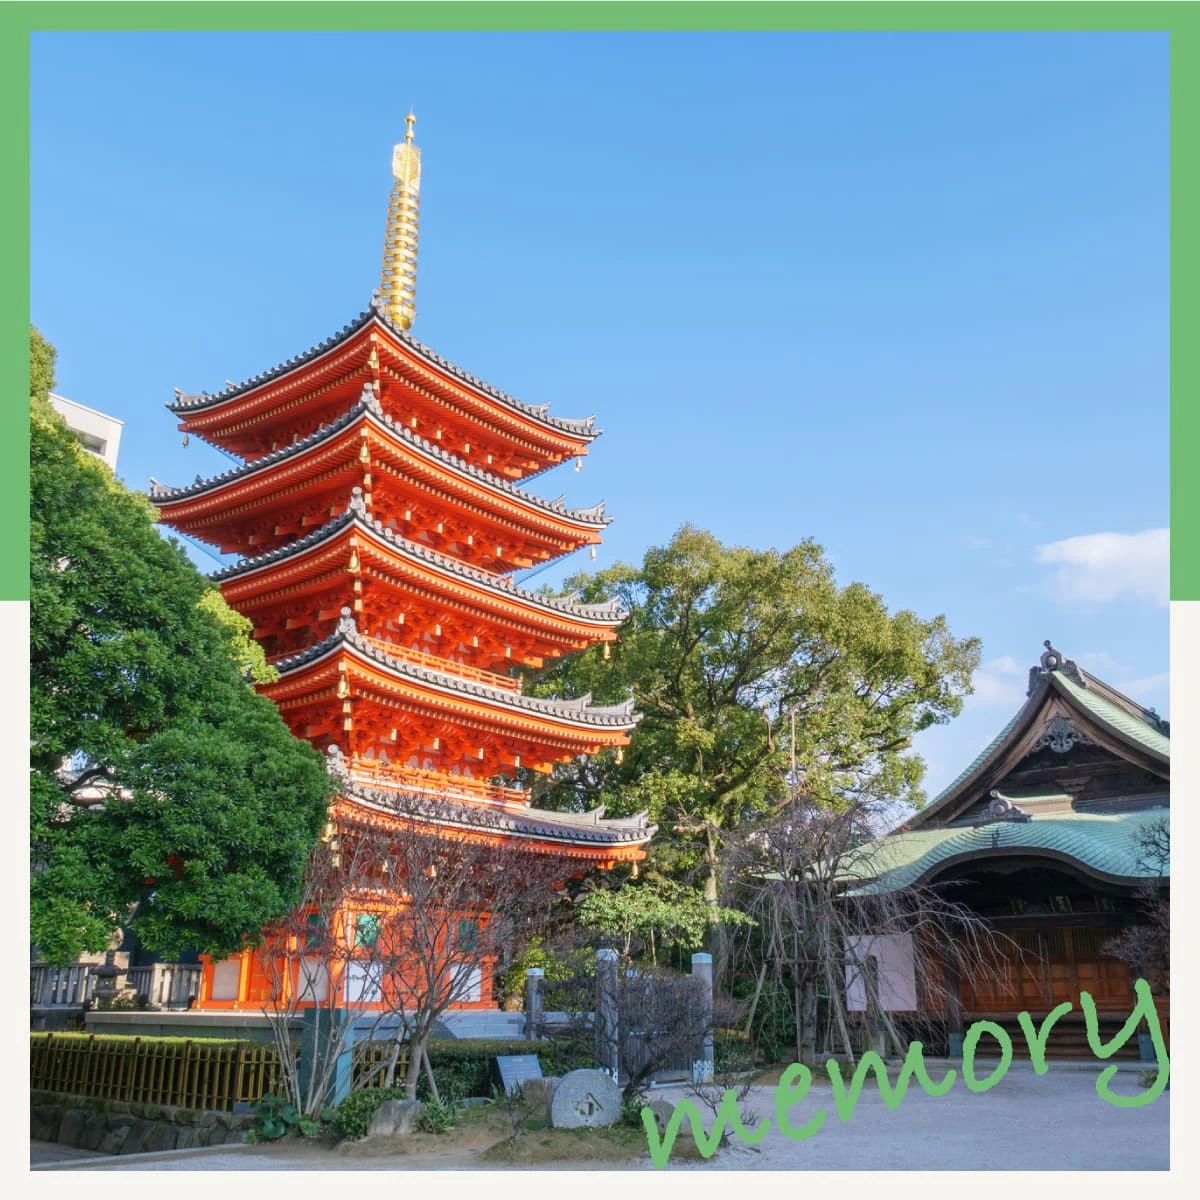 福岡の神社と由布院温泉を巡る。観光列車にも乗車するデート旅